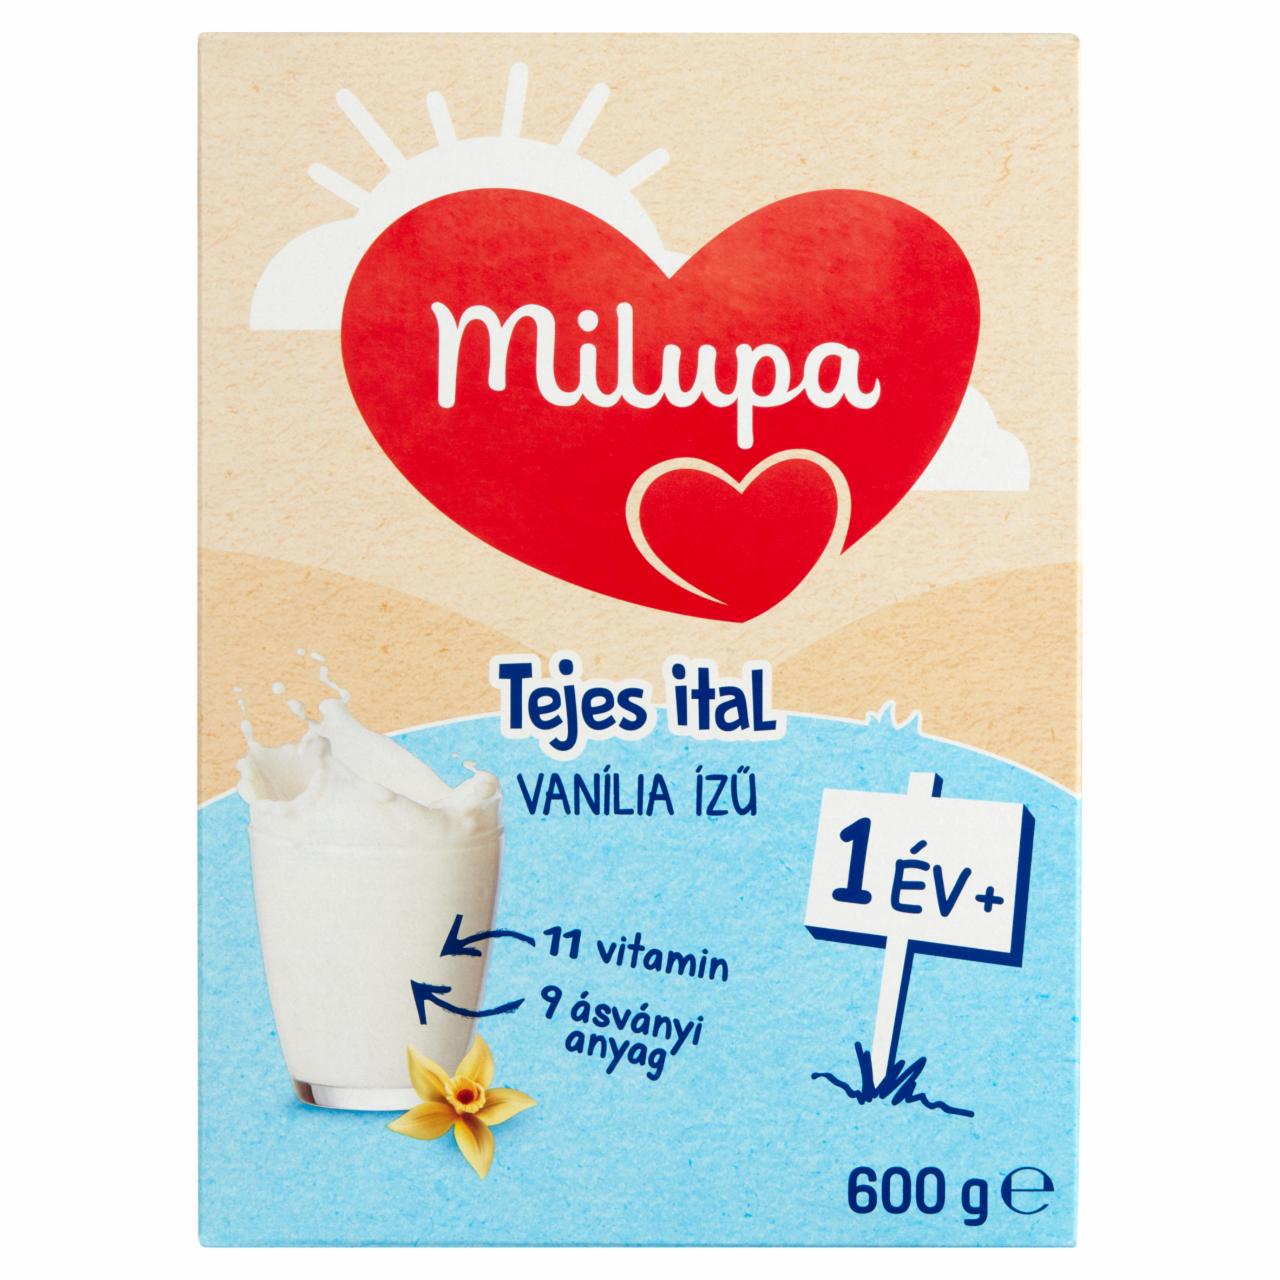 Képek - Milupa vaníliaízű tejes ital 12 hó+ 600 g